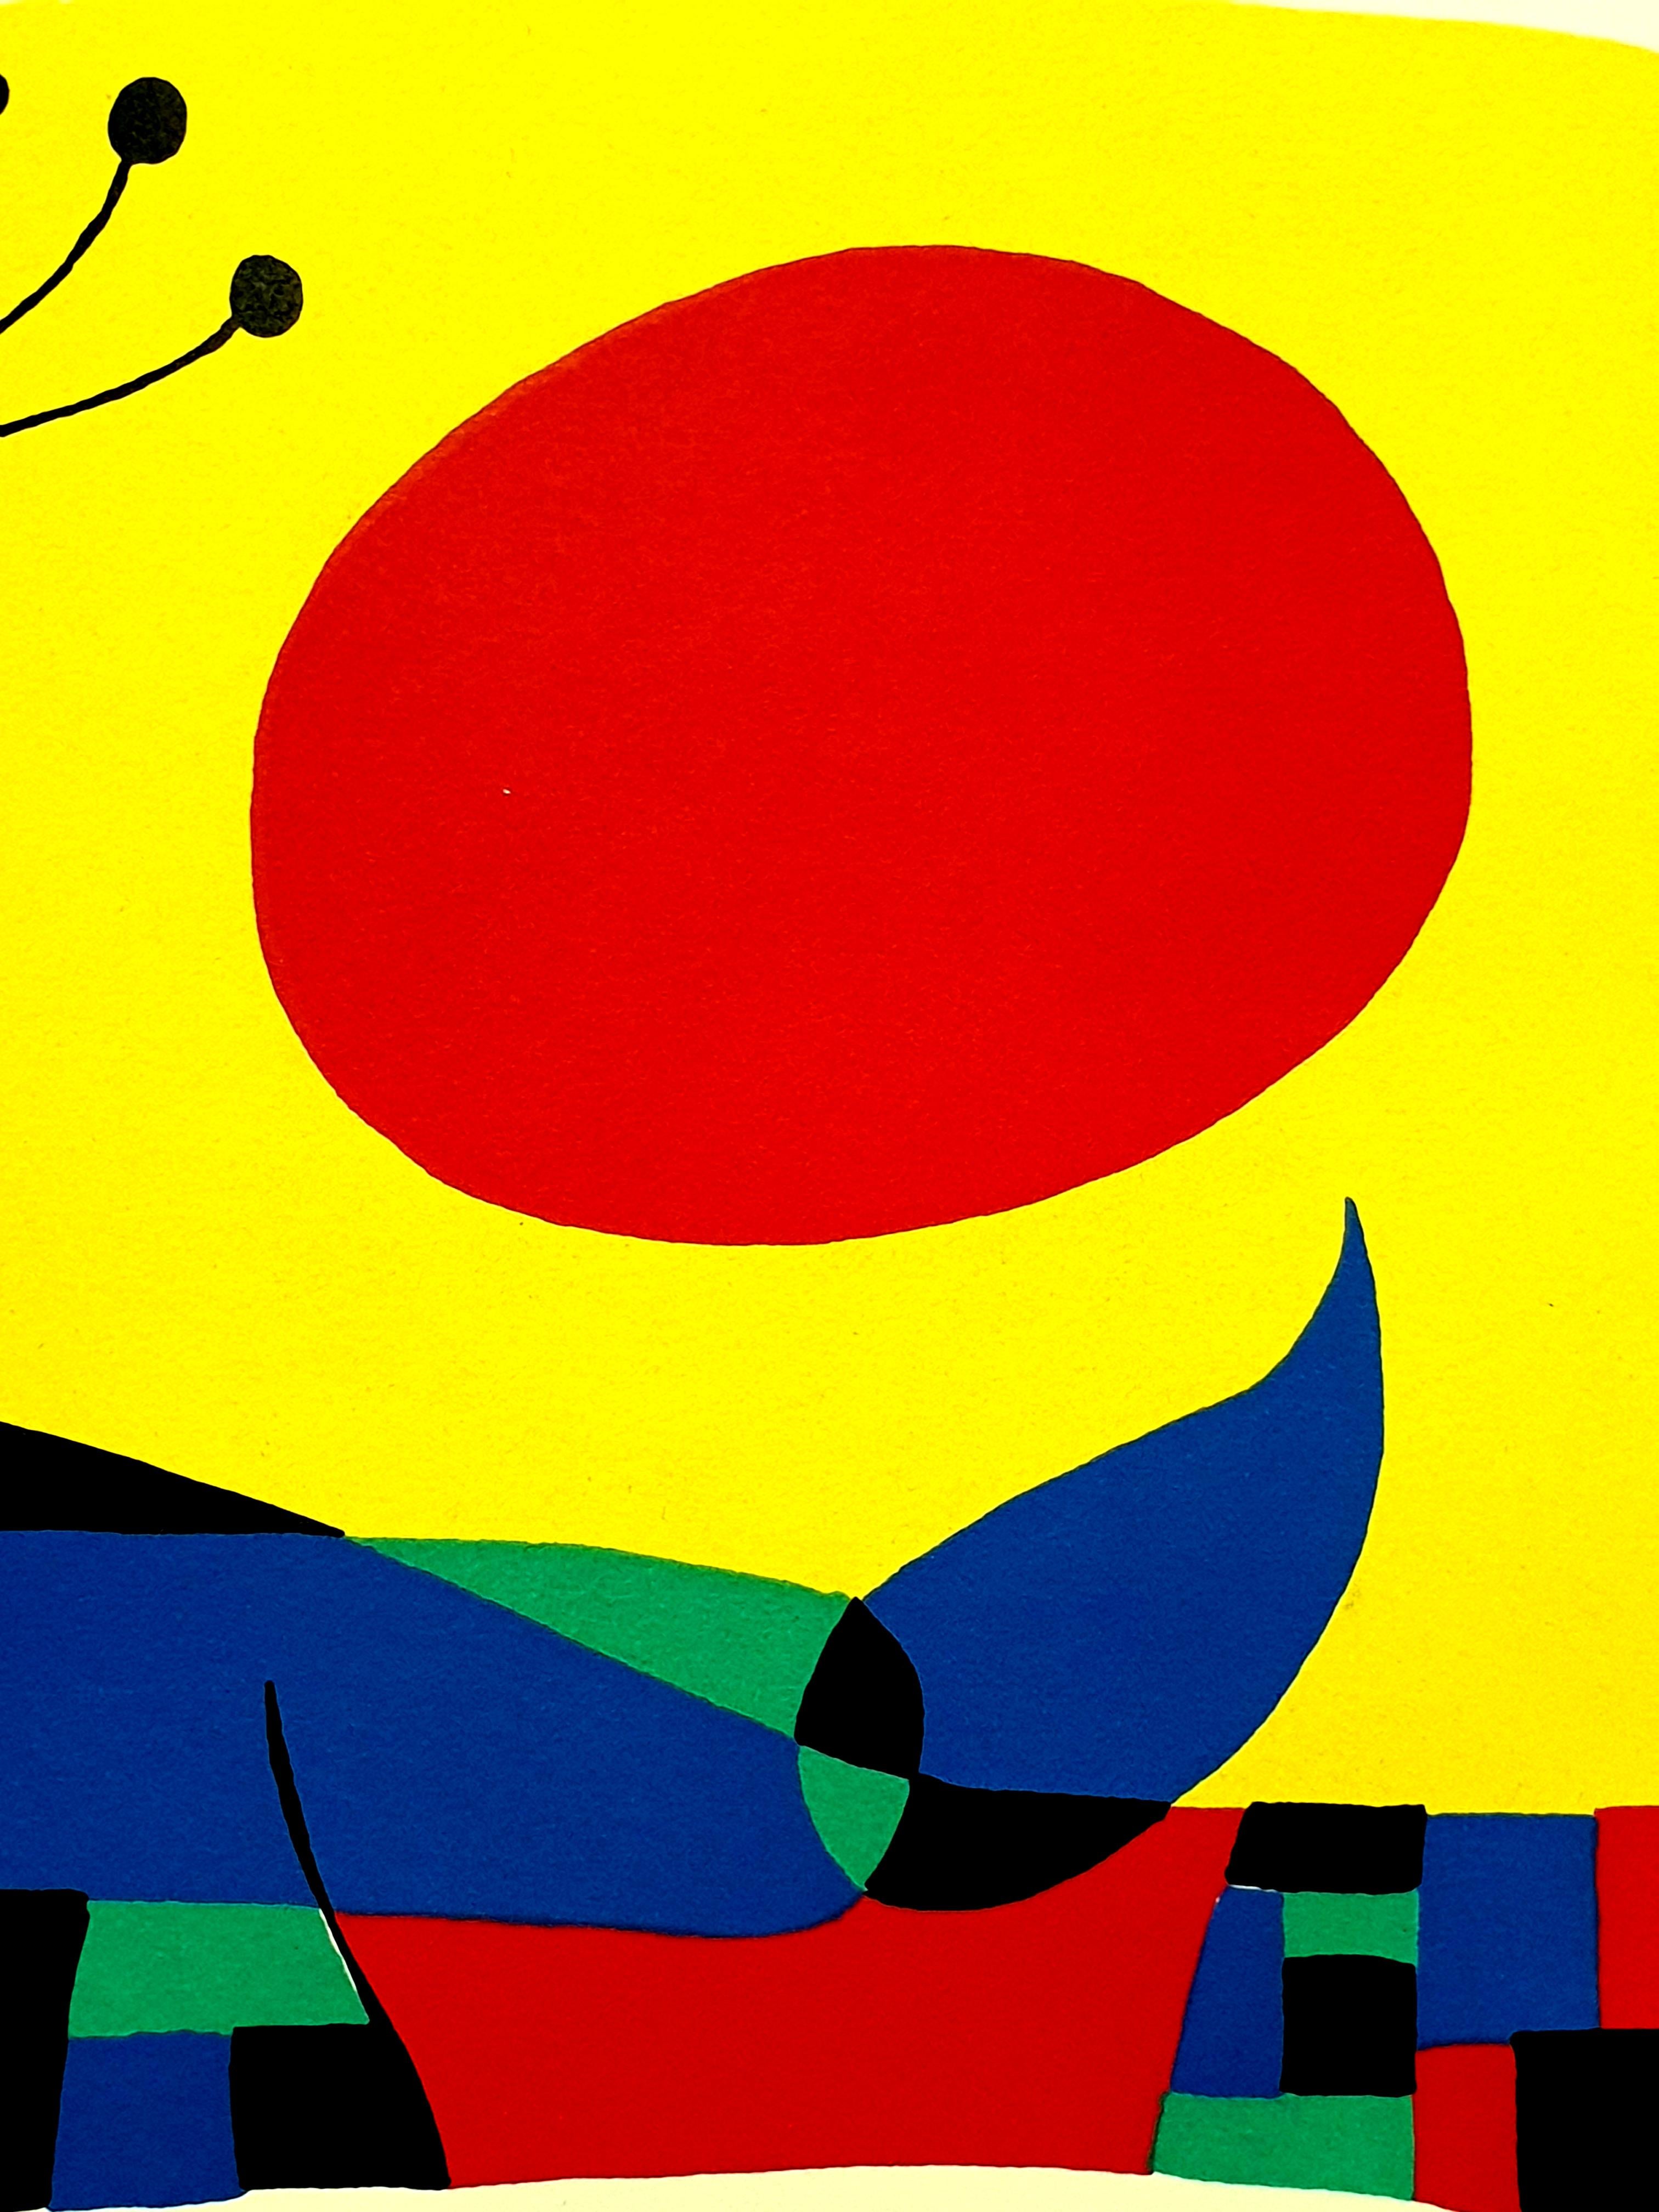 Joan Miro - Plumes de paon - Lithographie originale
Artiste : Joan Miro
Editeur : Maeght
Année : 1956
Dimensions : 23 x 38 cm
Référence : Mourlot 233

Biographie

Joan Miró i Ferrà (20 avril 1893 - 25 décembre 1983) était un peintre:: sculpteur et